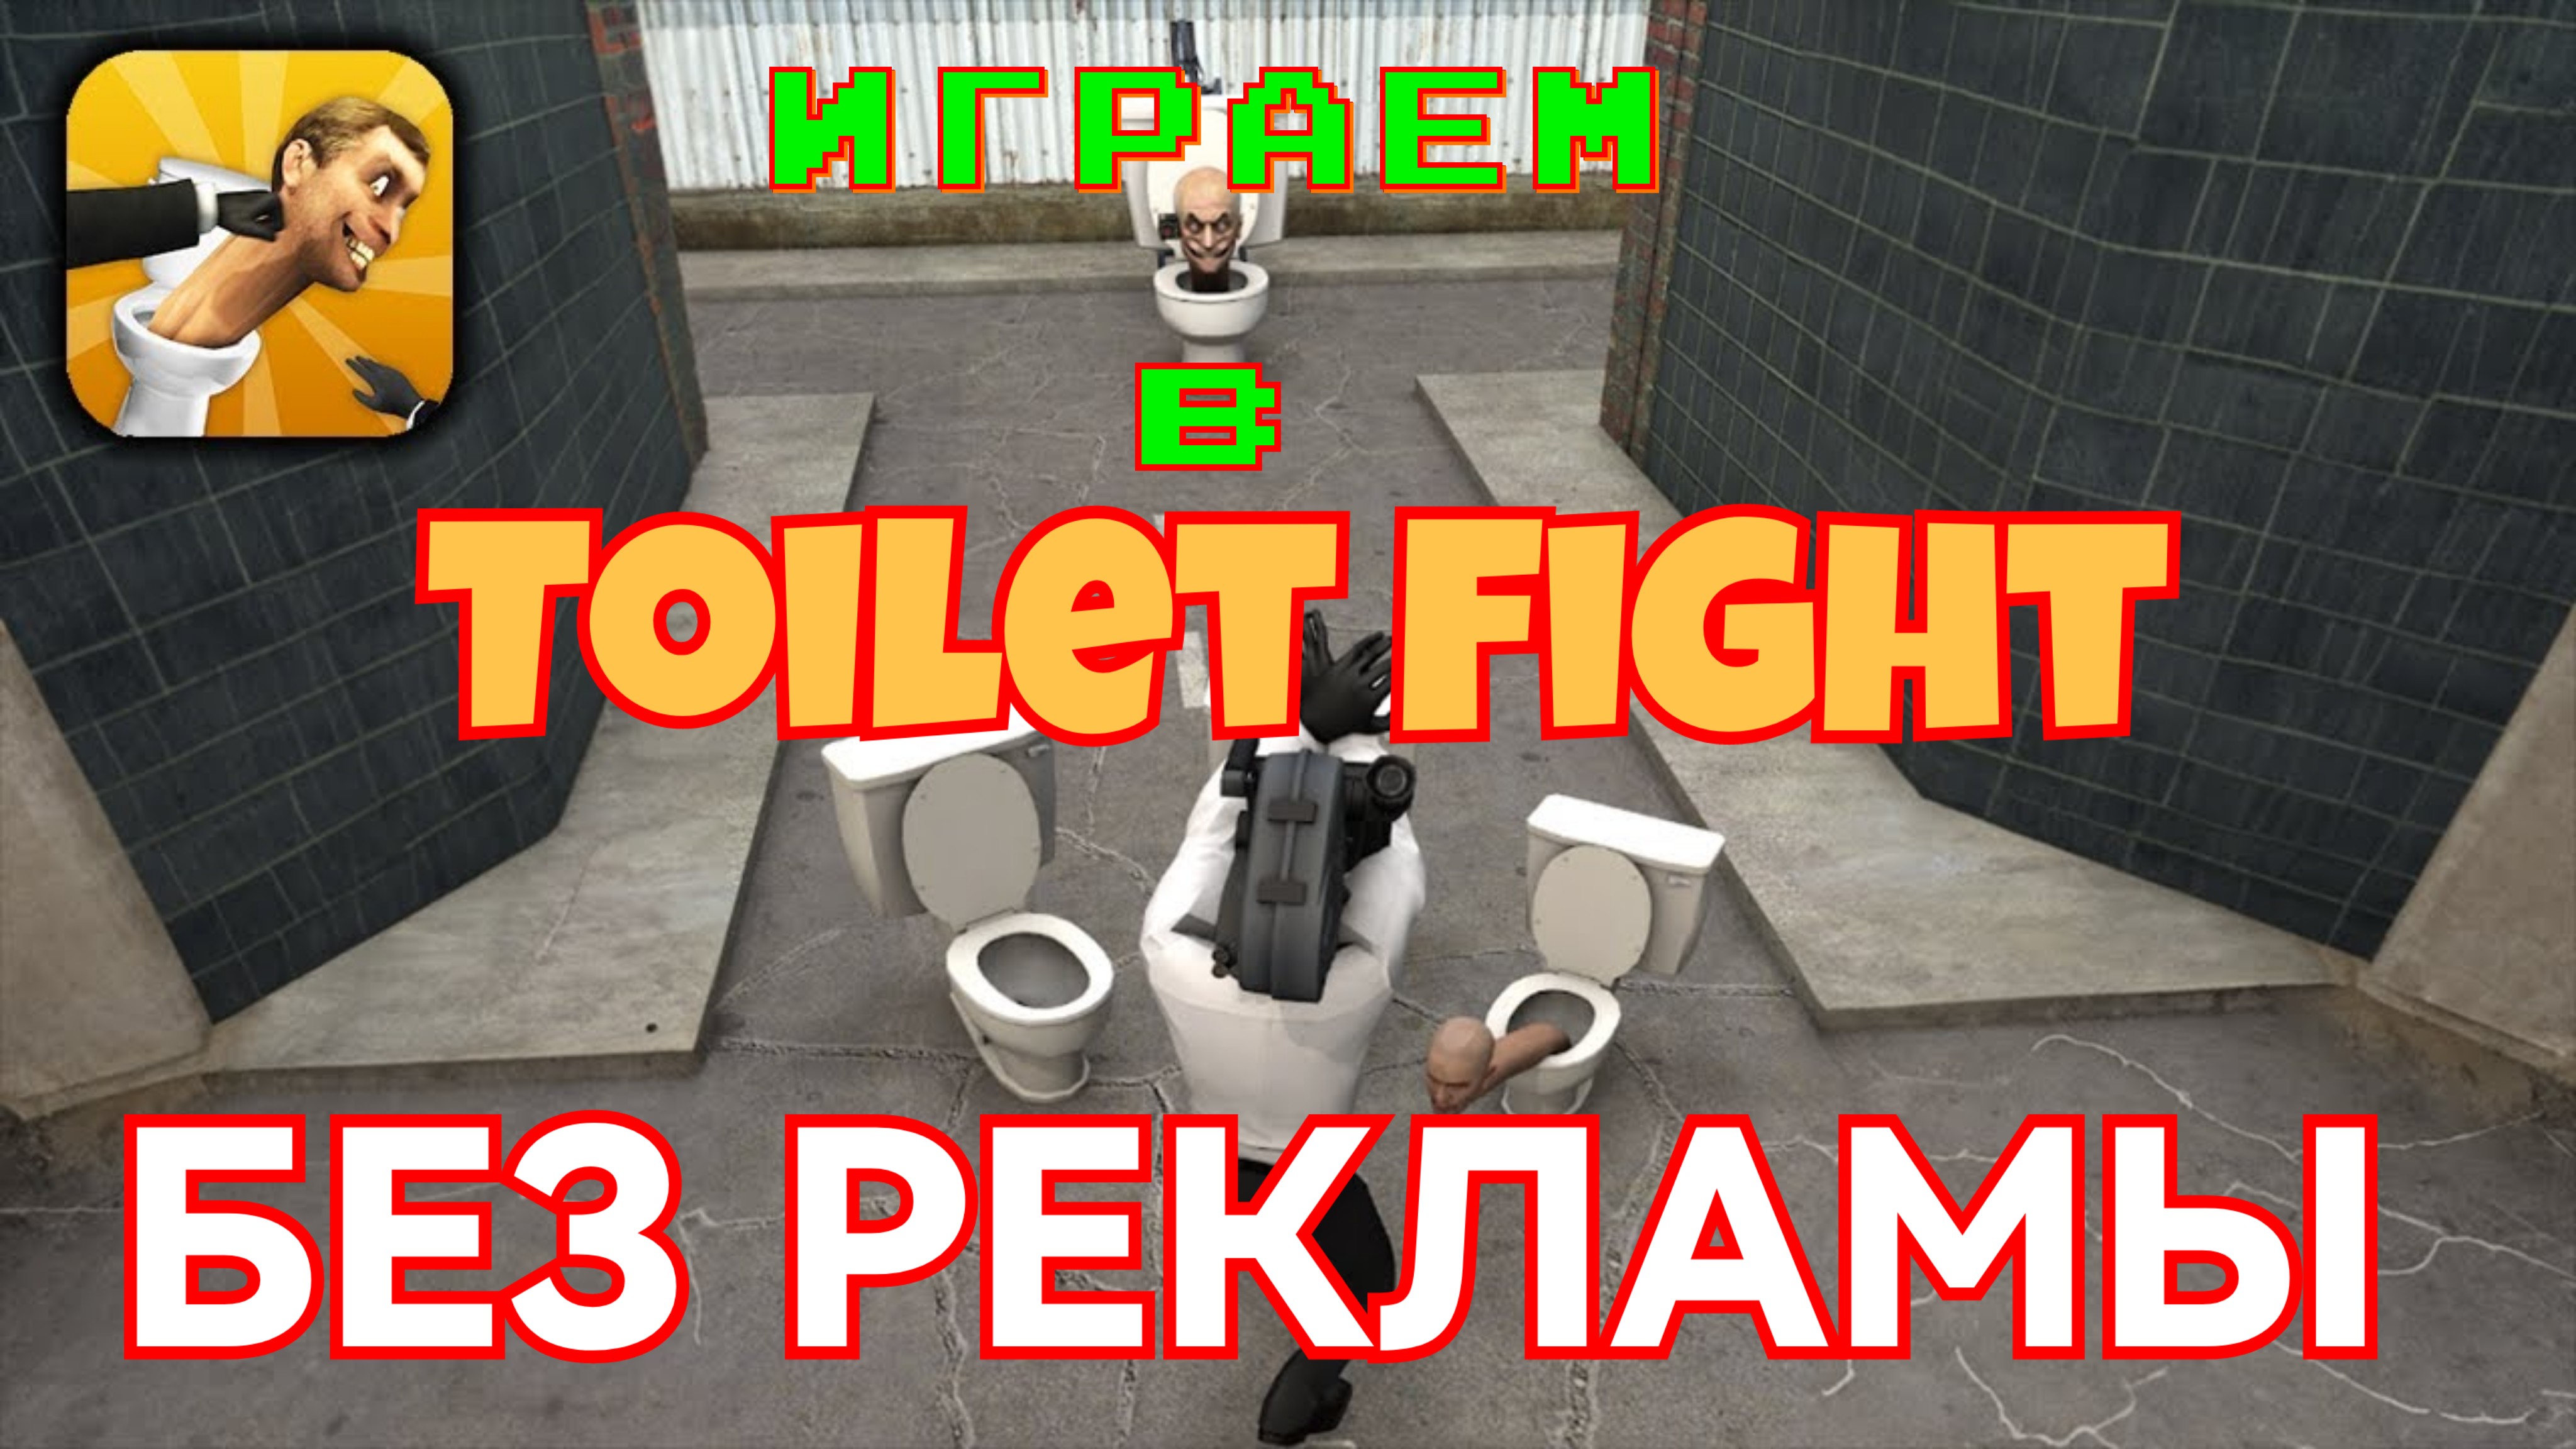 Взлома toilet fight open. Игра туалет файт открытый мир. Взломанный туалет Fight. Промокоды в игру Toilet Fight.